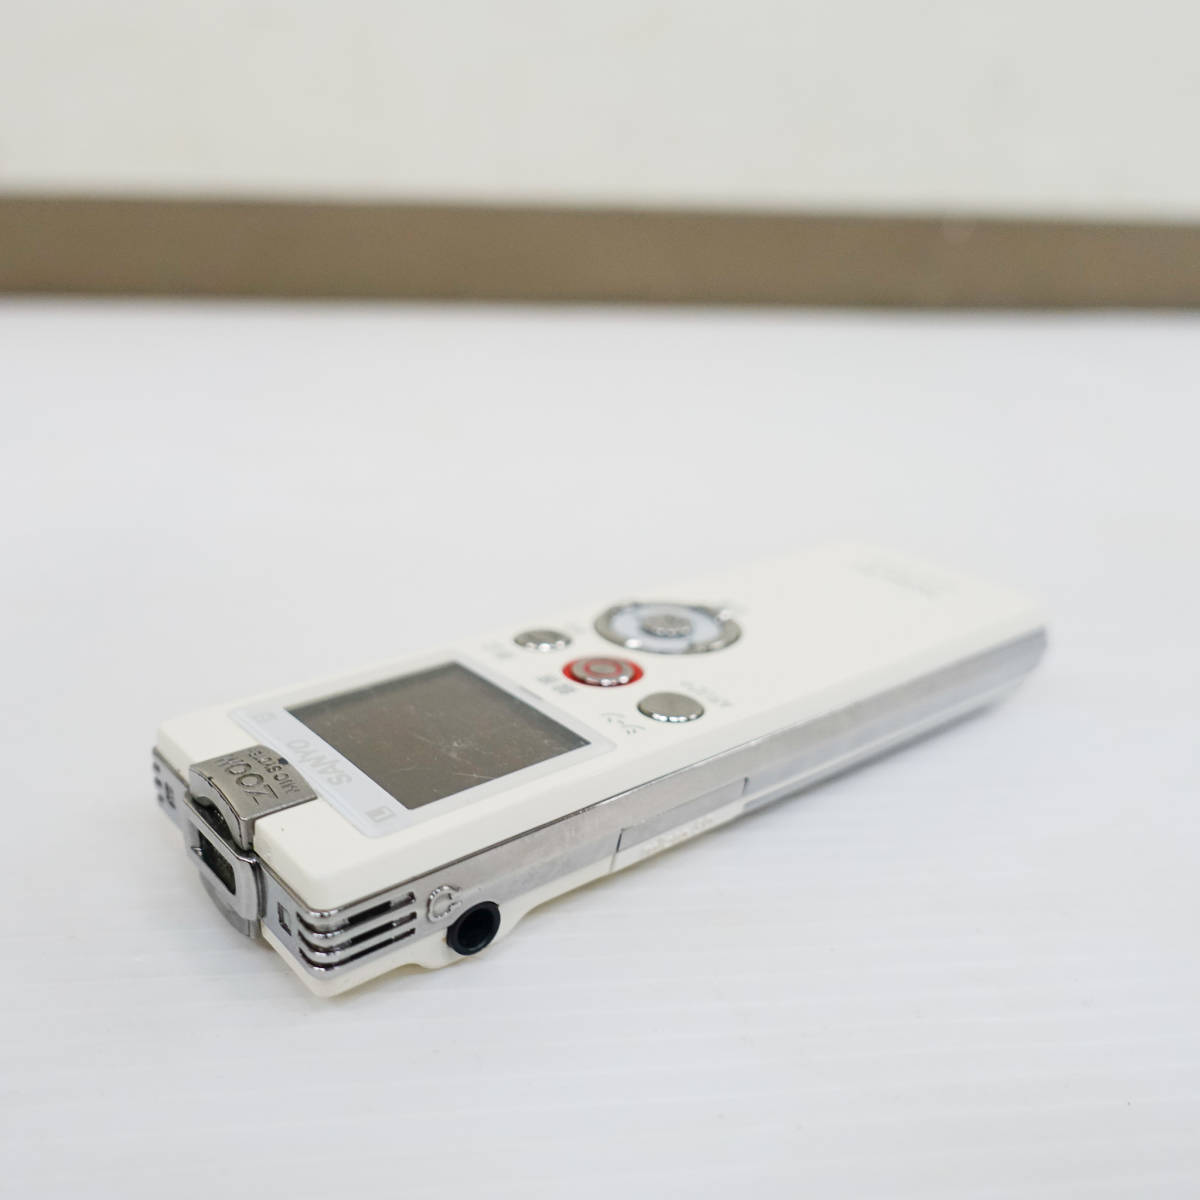 SANYO サンヨー ICレコーダー Xacti ICR-PS503RM 4GB ボイスレコーダー ボイスメモ ビジネス 取材 K3368_画像4